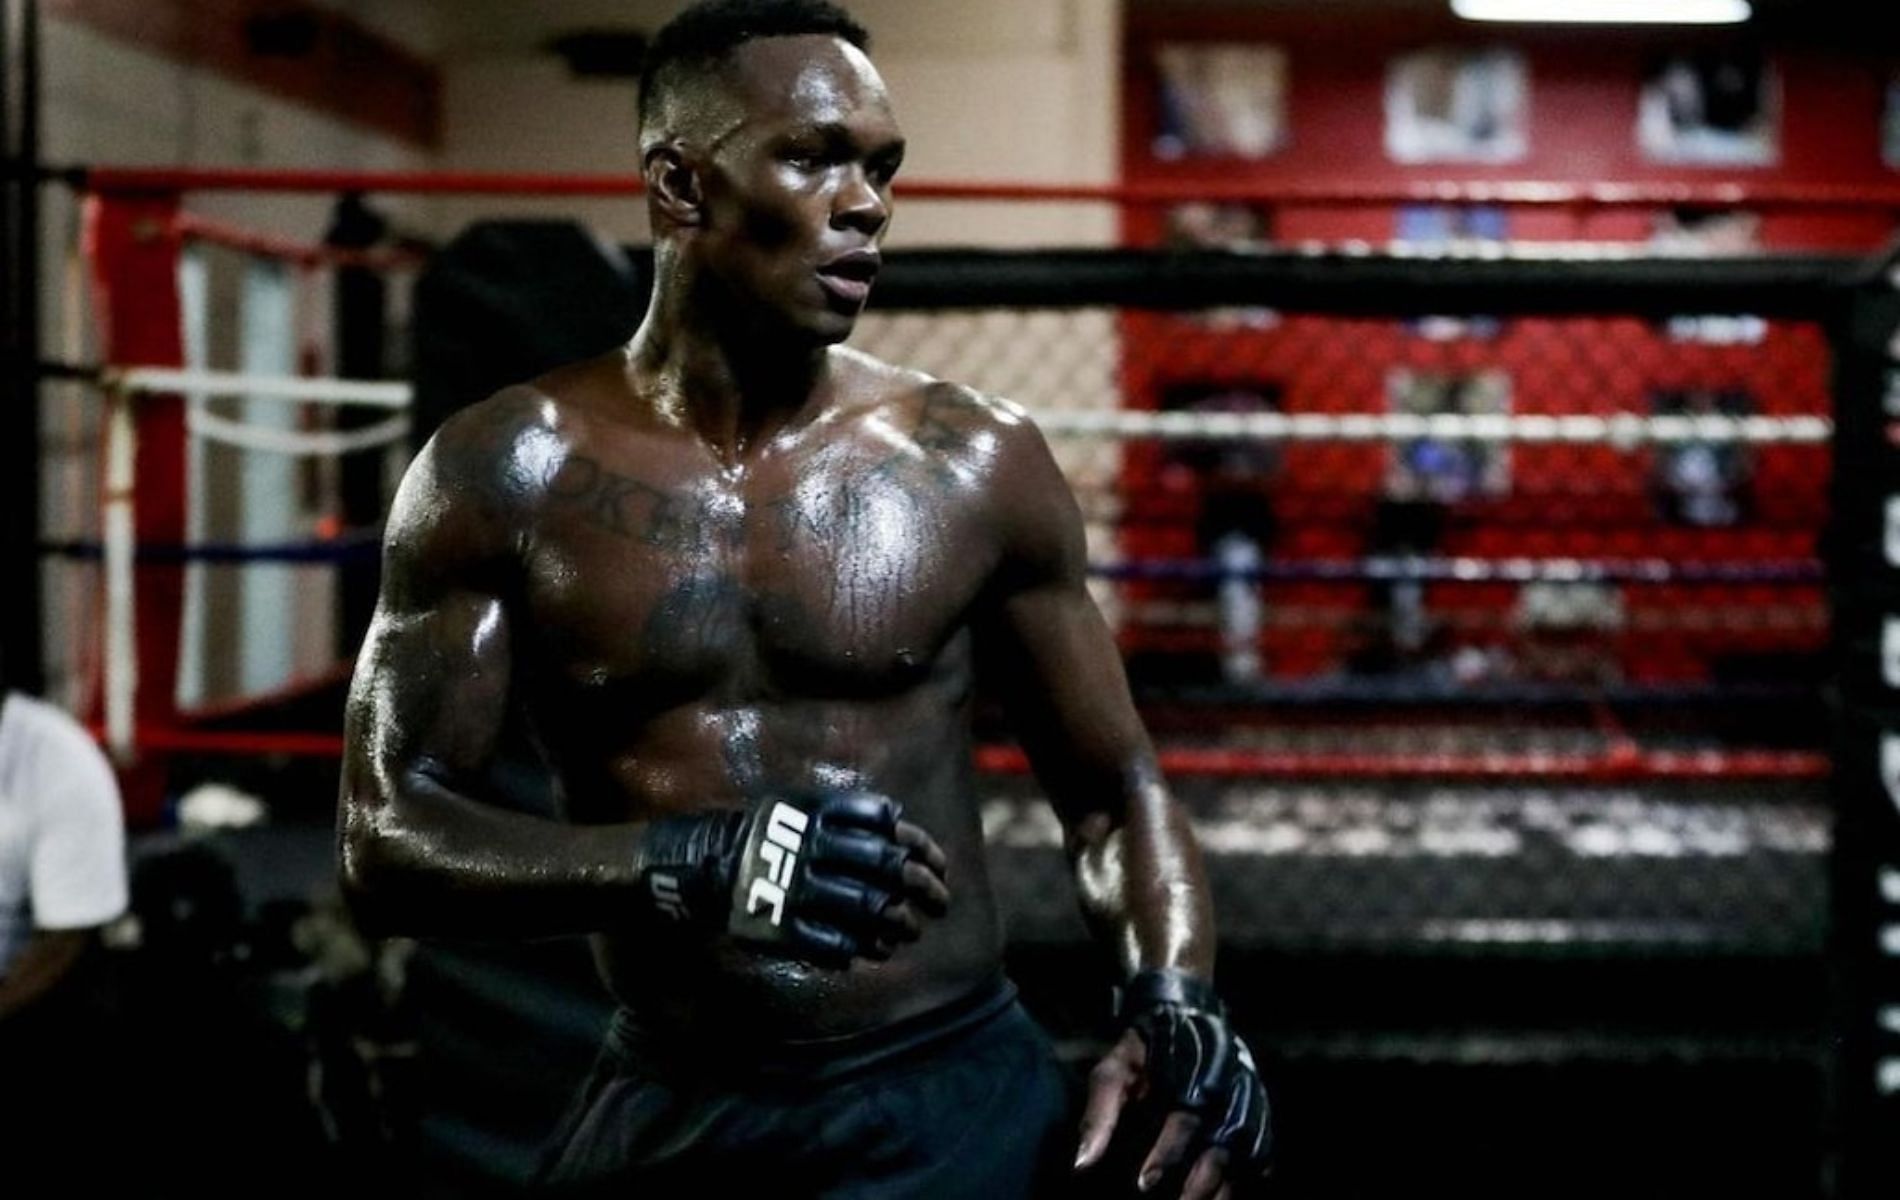 Israel Adesanya will return to action at UFC 287